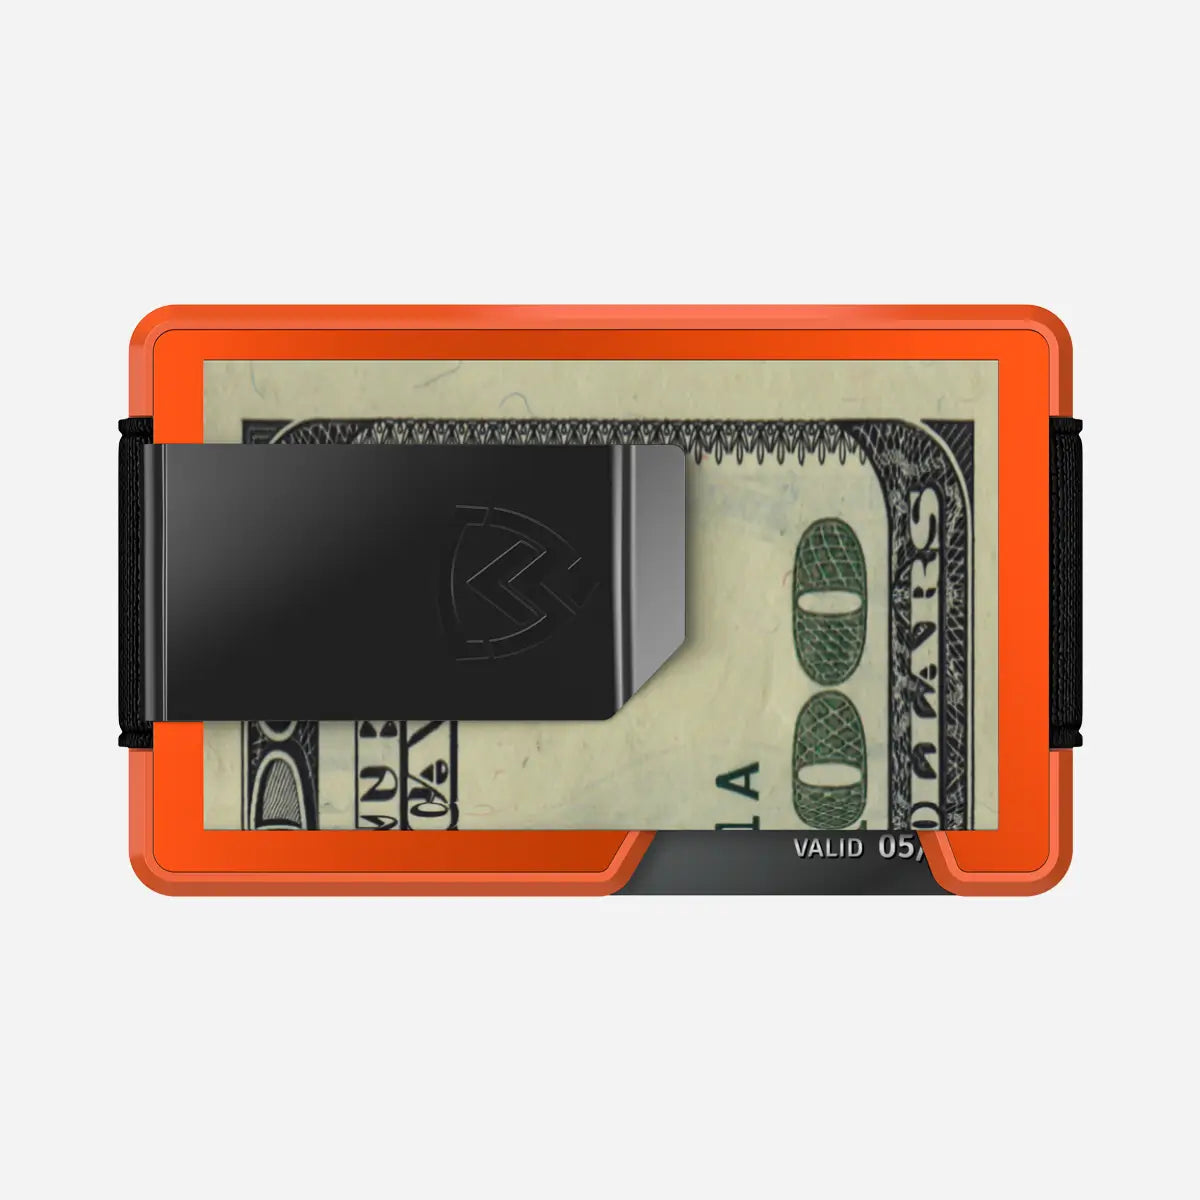 Axwell Wallet - Blaze Orange